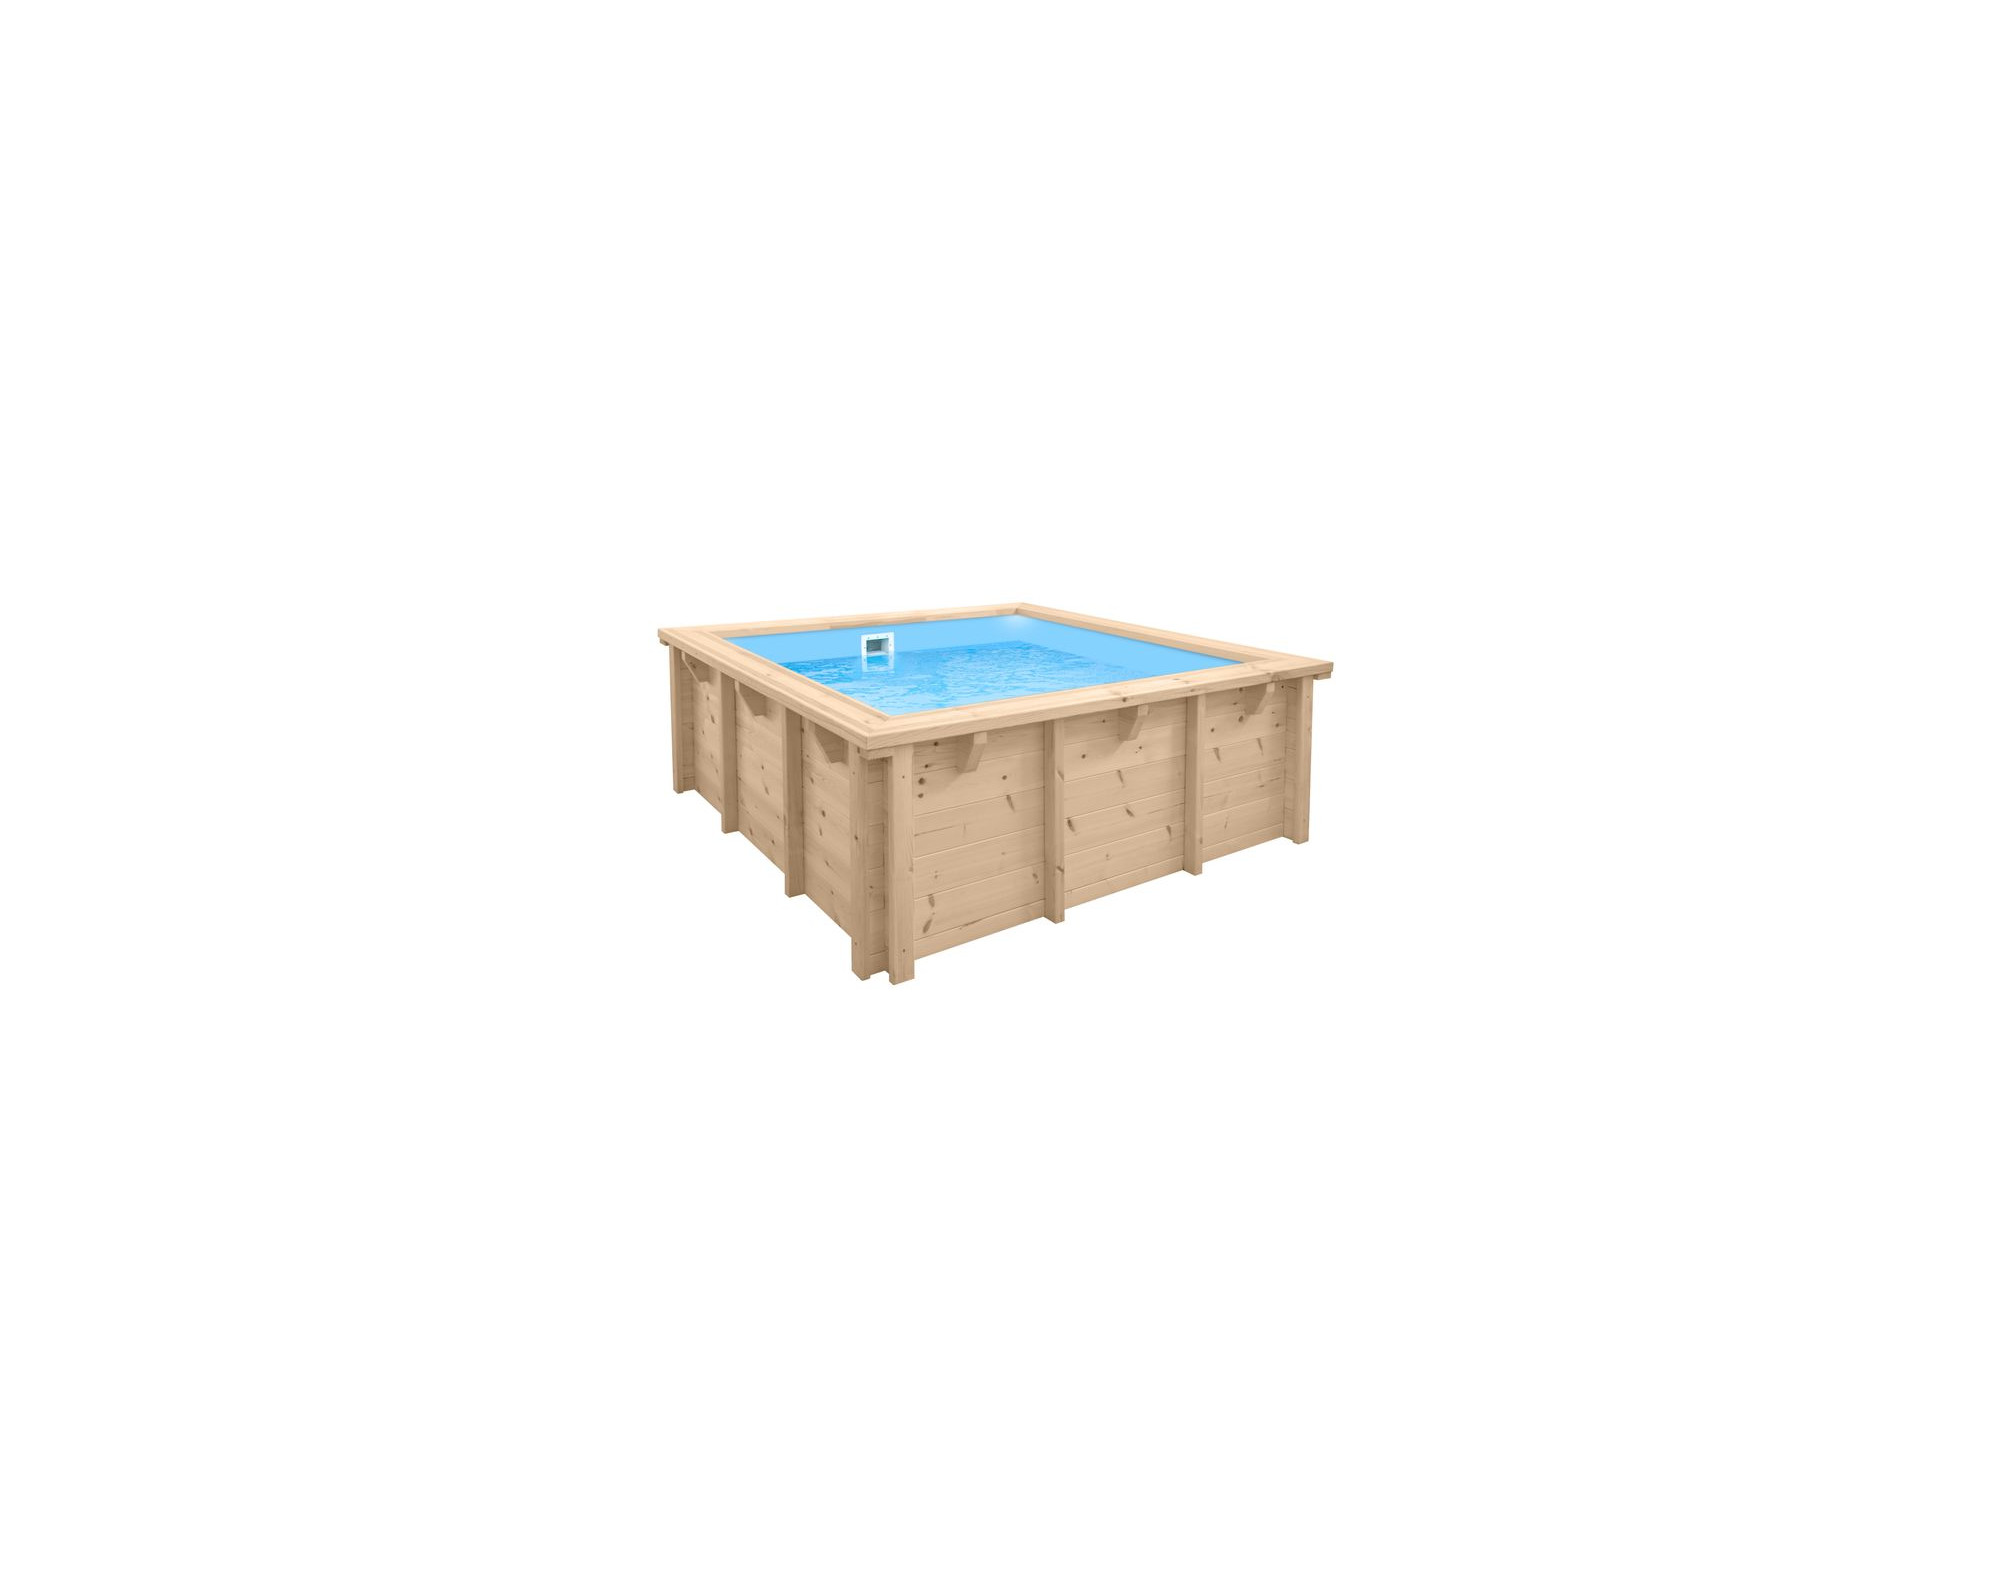 Houten zwembad - Baby Pool - 229 cm x 229 cm x 71 cm opbouw (met liner)